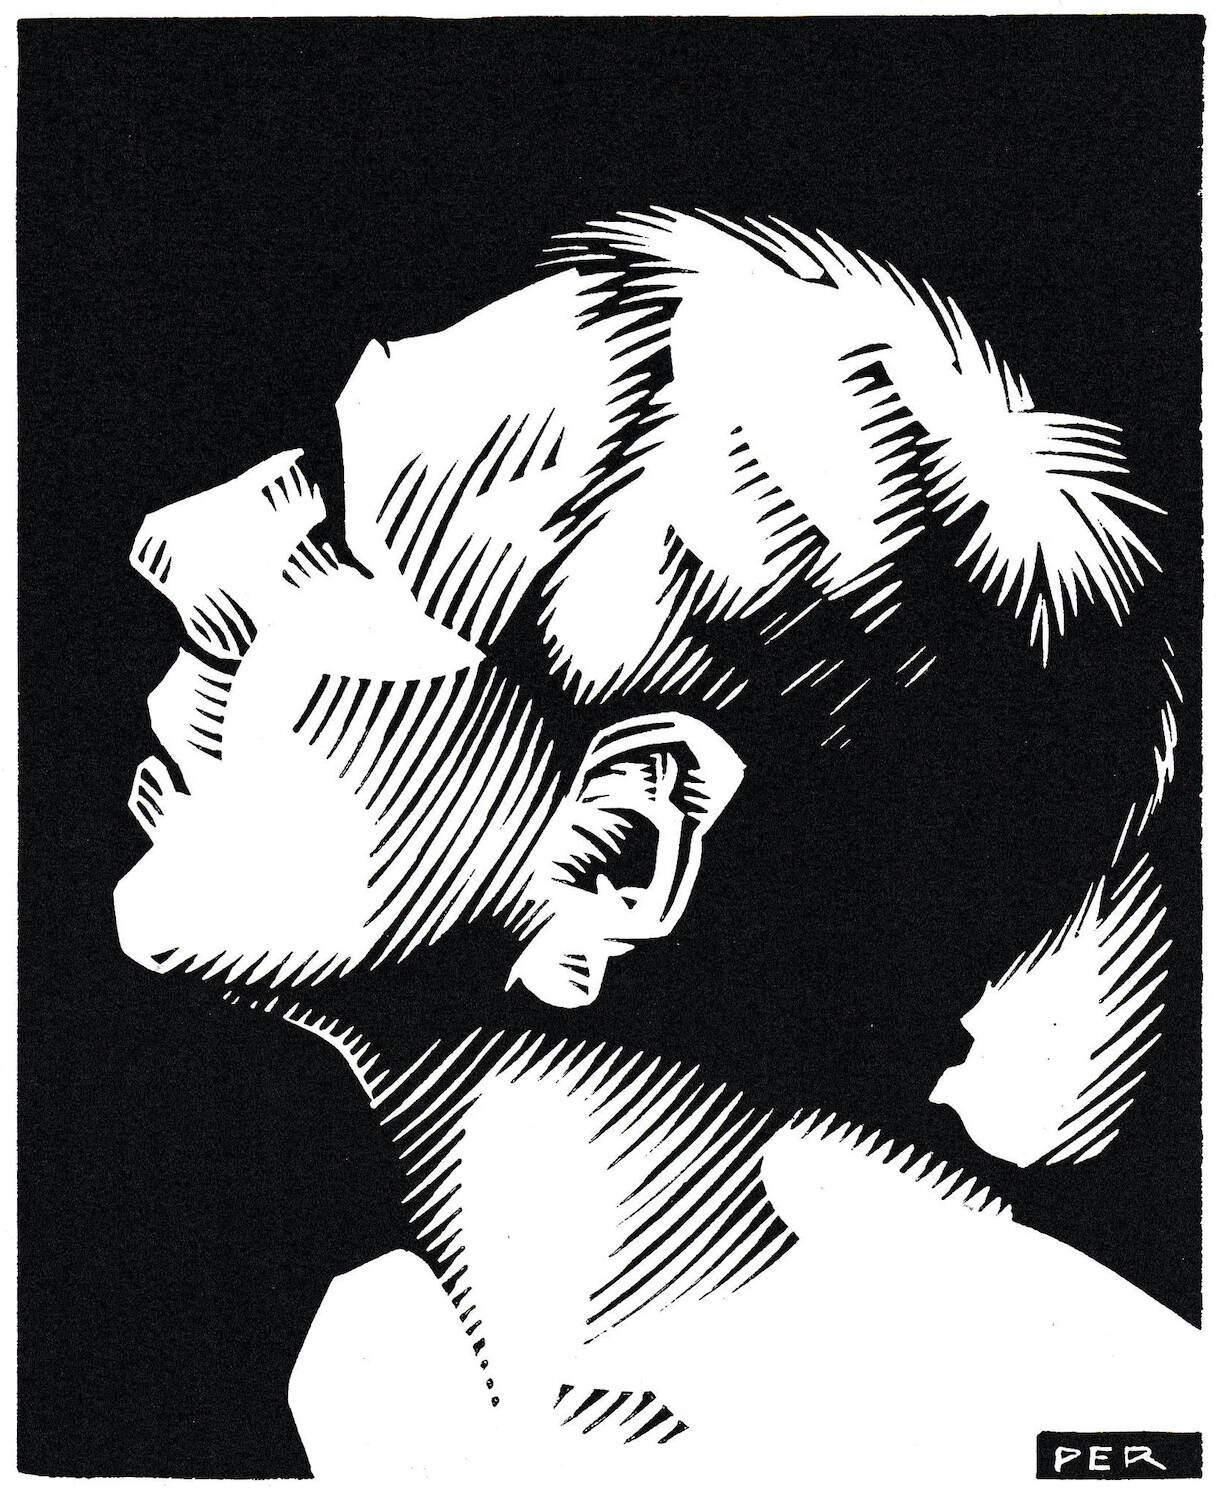 Meinrad Peier (1903–1964), Jugend voran, 1950. Linolschnitt auf Papier, 169 x 136 cm, Kunstmuseum Olten, Schenkung © Hans Rudolf Peier